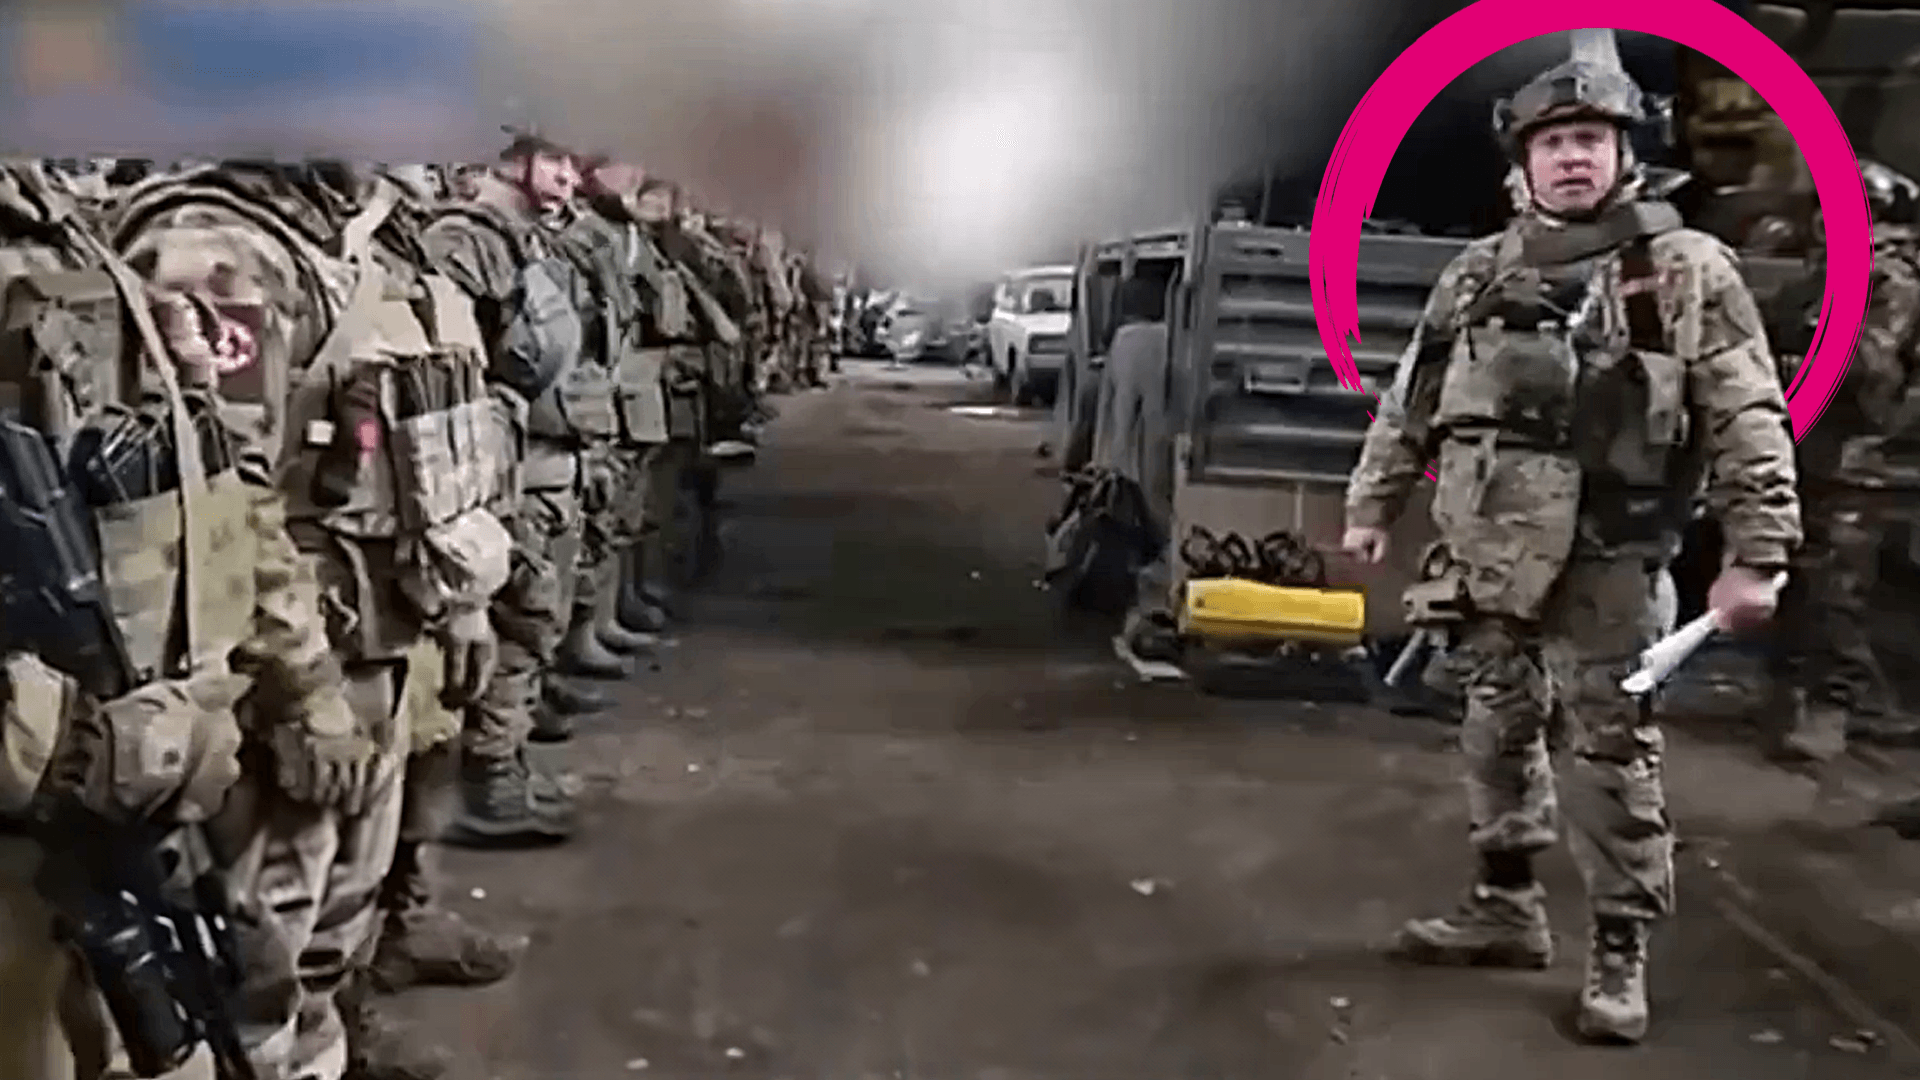 Russland-Kommandeur zu Soldaten: “Ihr werdet alle sterben” | Video